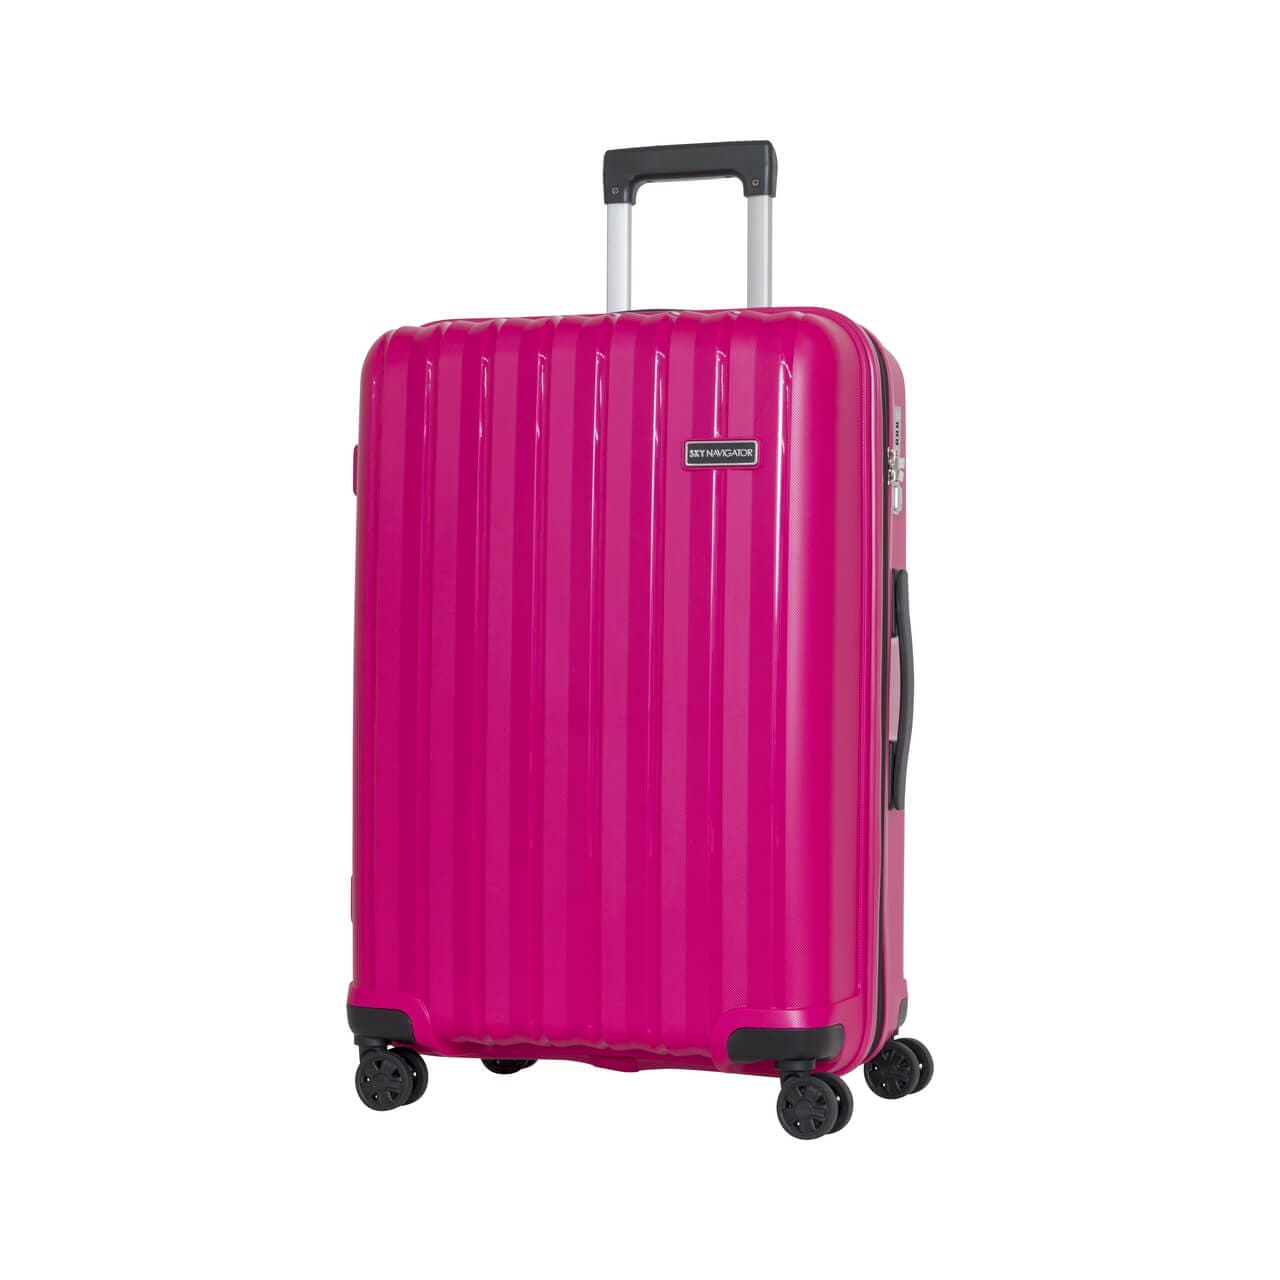 SKYNAVIGATORのスーツケースSK-0777-64のピンクの正面振り画像